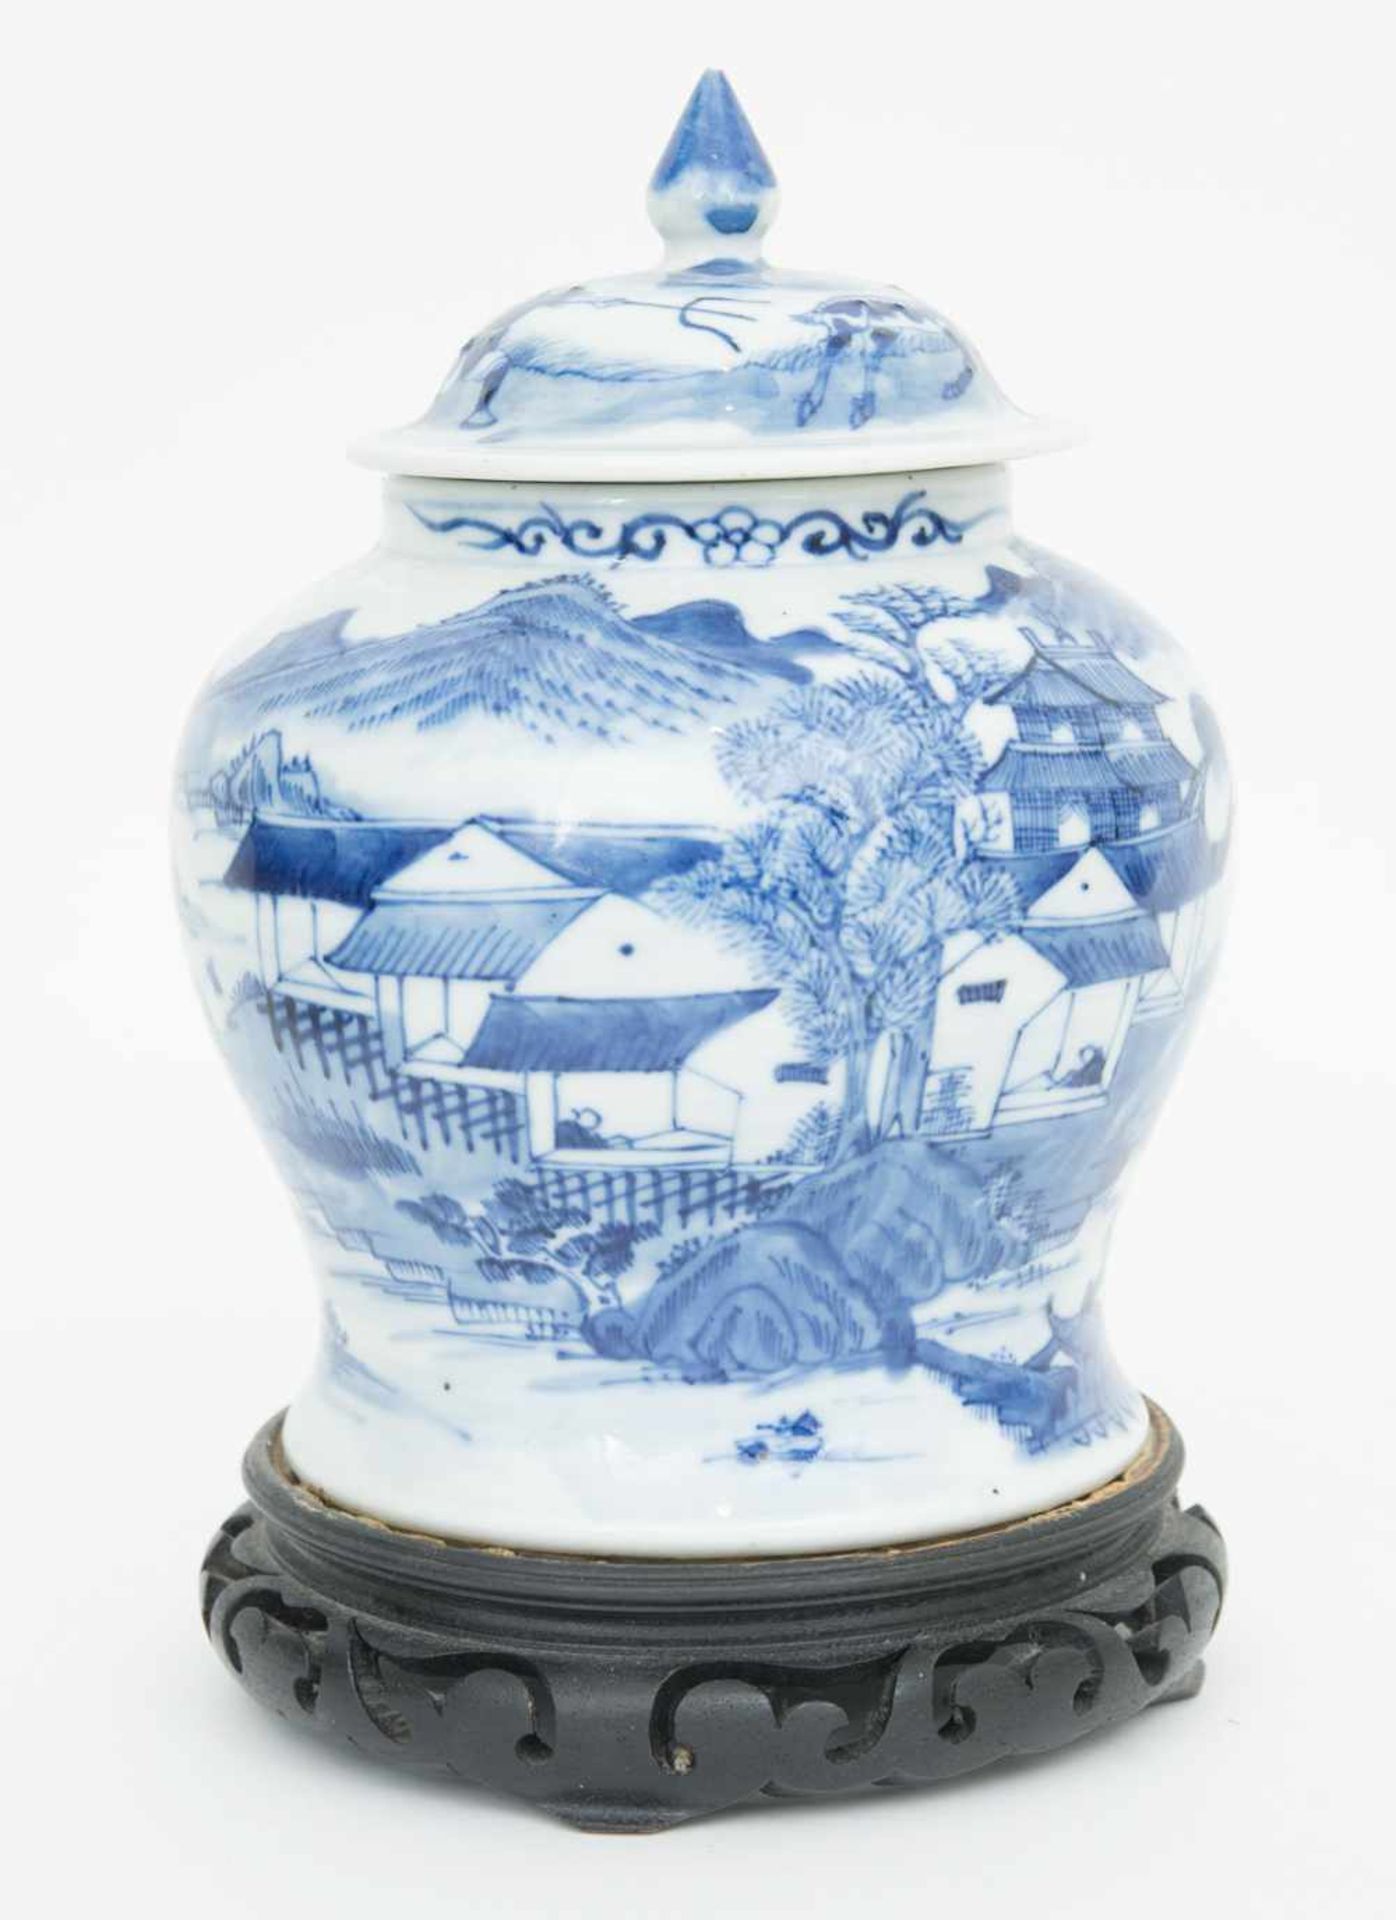 PORZELLANVASE AUF HÖLZERNEM STAND,wohl Qing Dynastie, China Chinesische Vase aus Porzellan, wohl - Bild 2 aus 11